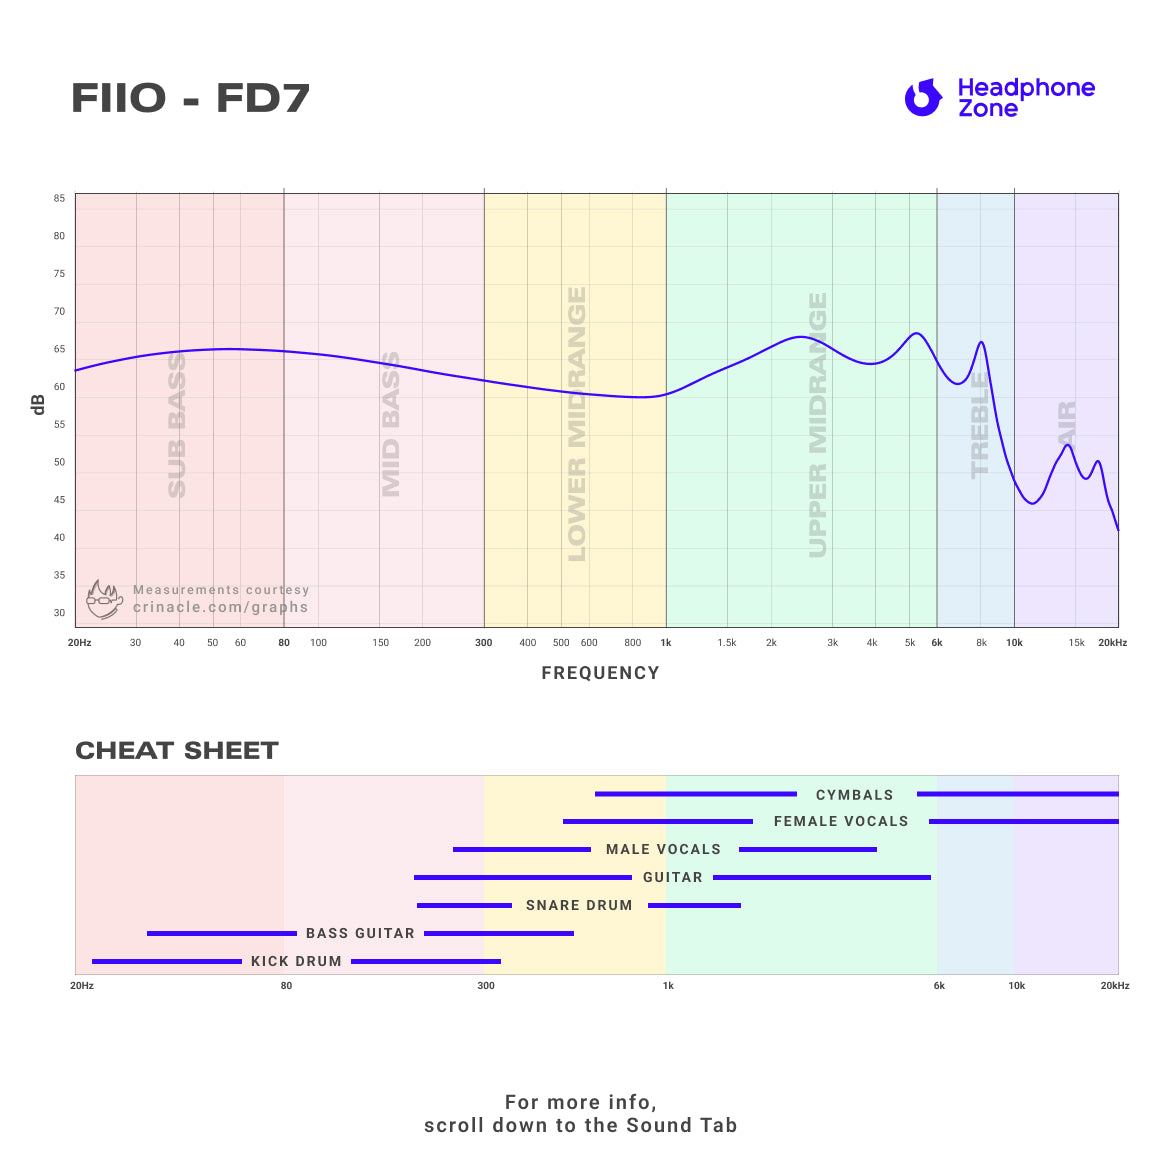 FiiO - FD7